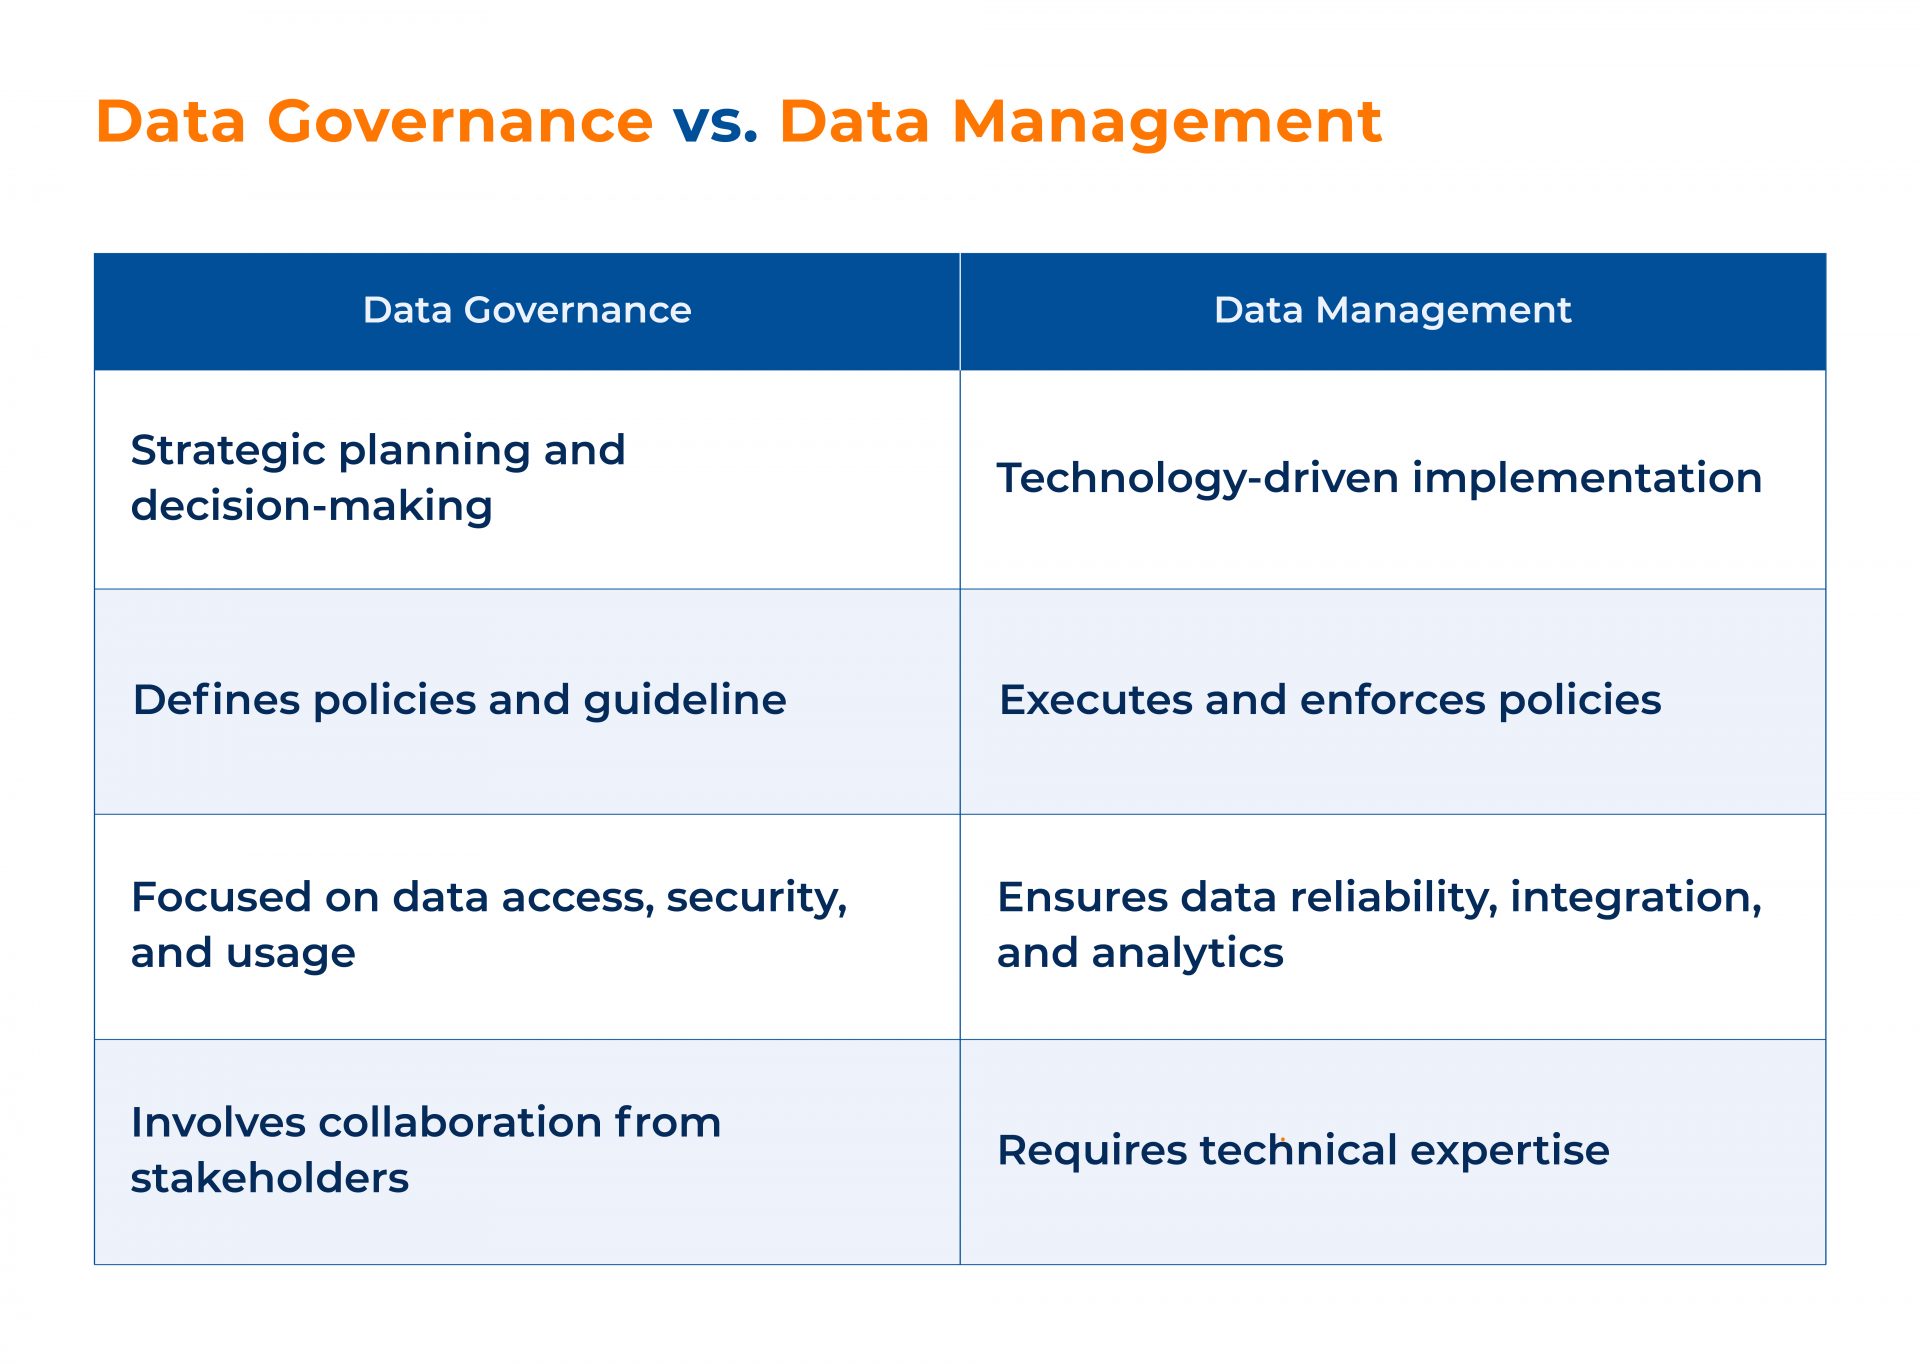 Data Governance vs. Data Management_Kanerika 